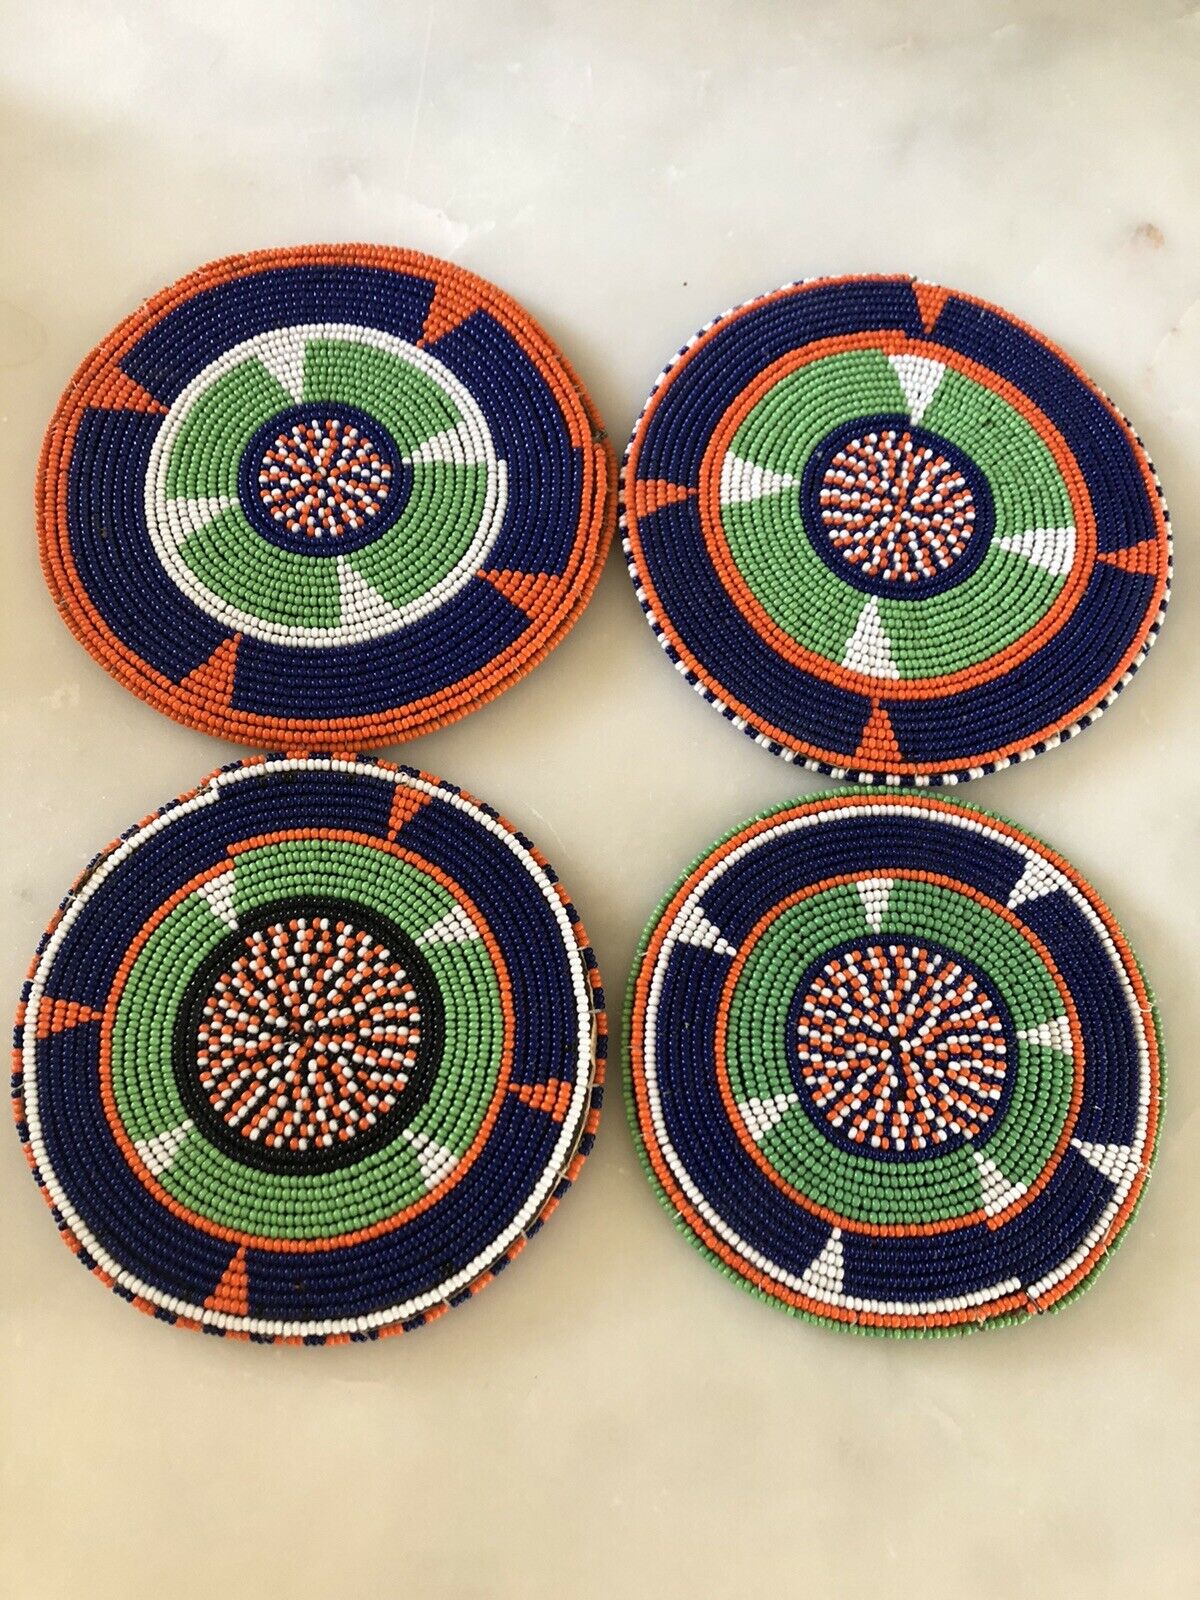 4 Handmade African Beaded Coasters - Vintage